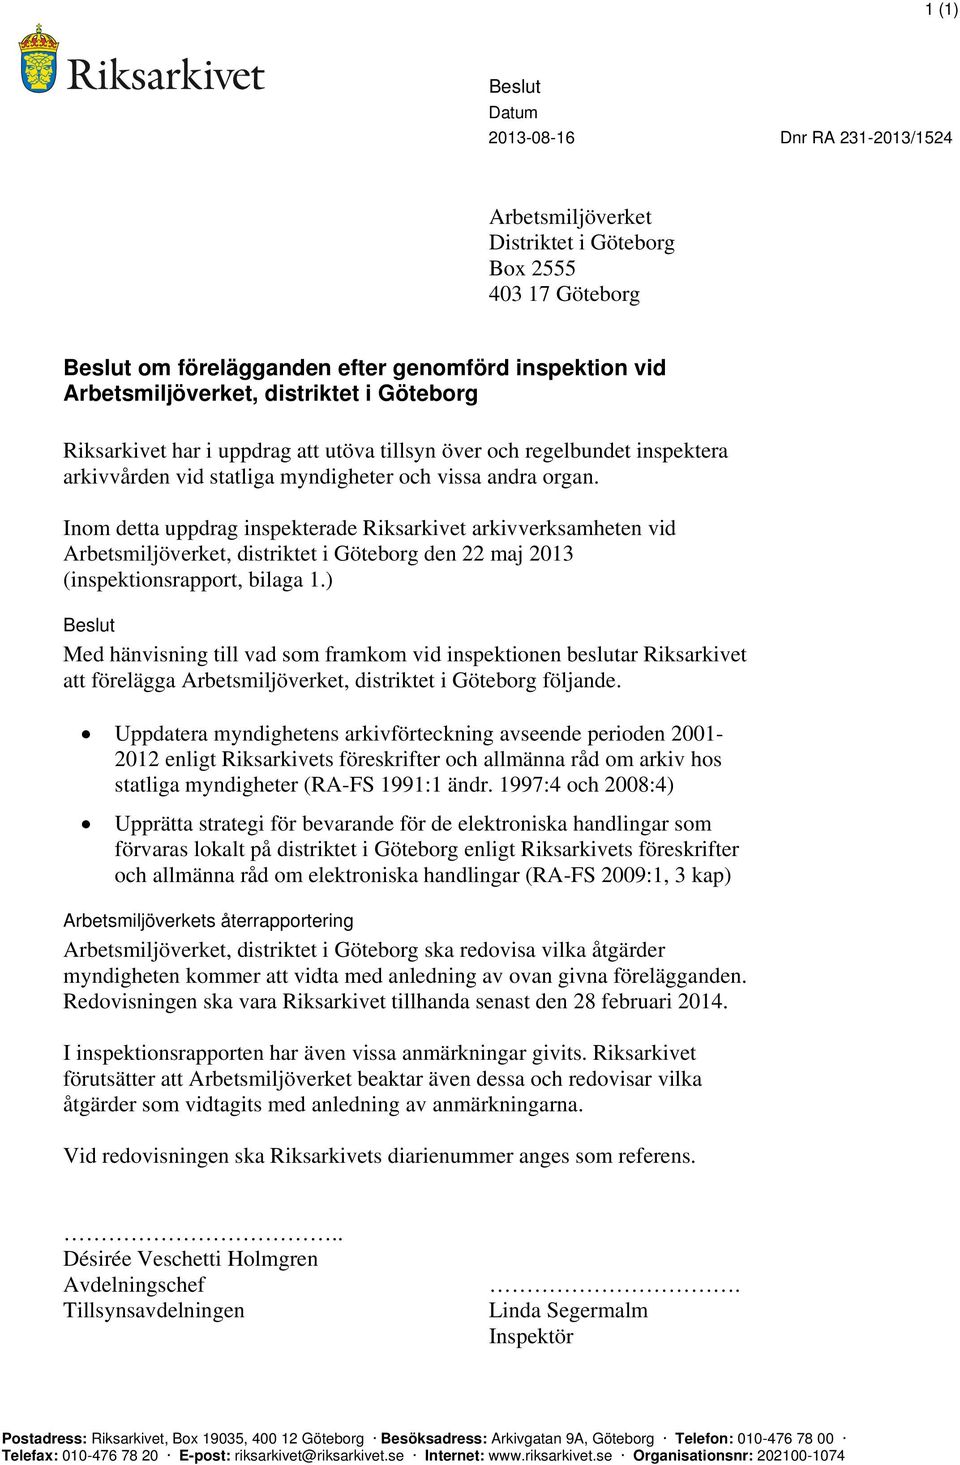 Inom detta uppdrag inspekterade Riksarkivet arkivverksamheten vid Arbetsmiljöverket, distriktet i Göteborg den 22 maj 2013 (inspektionsrapport, bilaga 1.